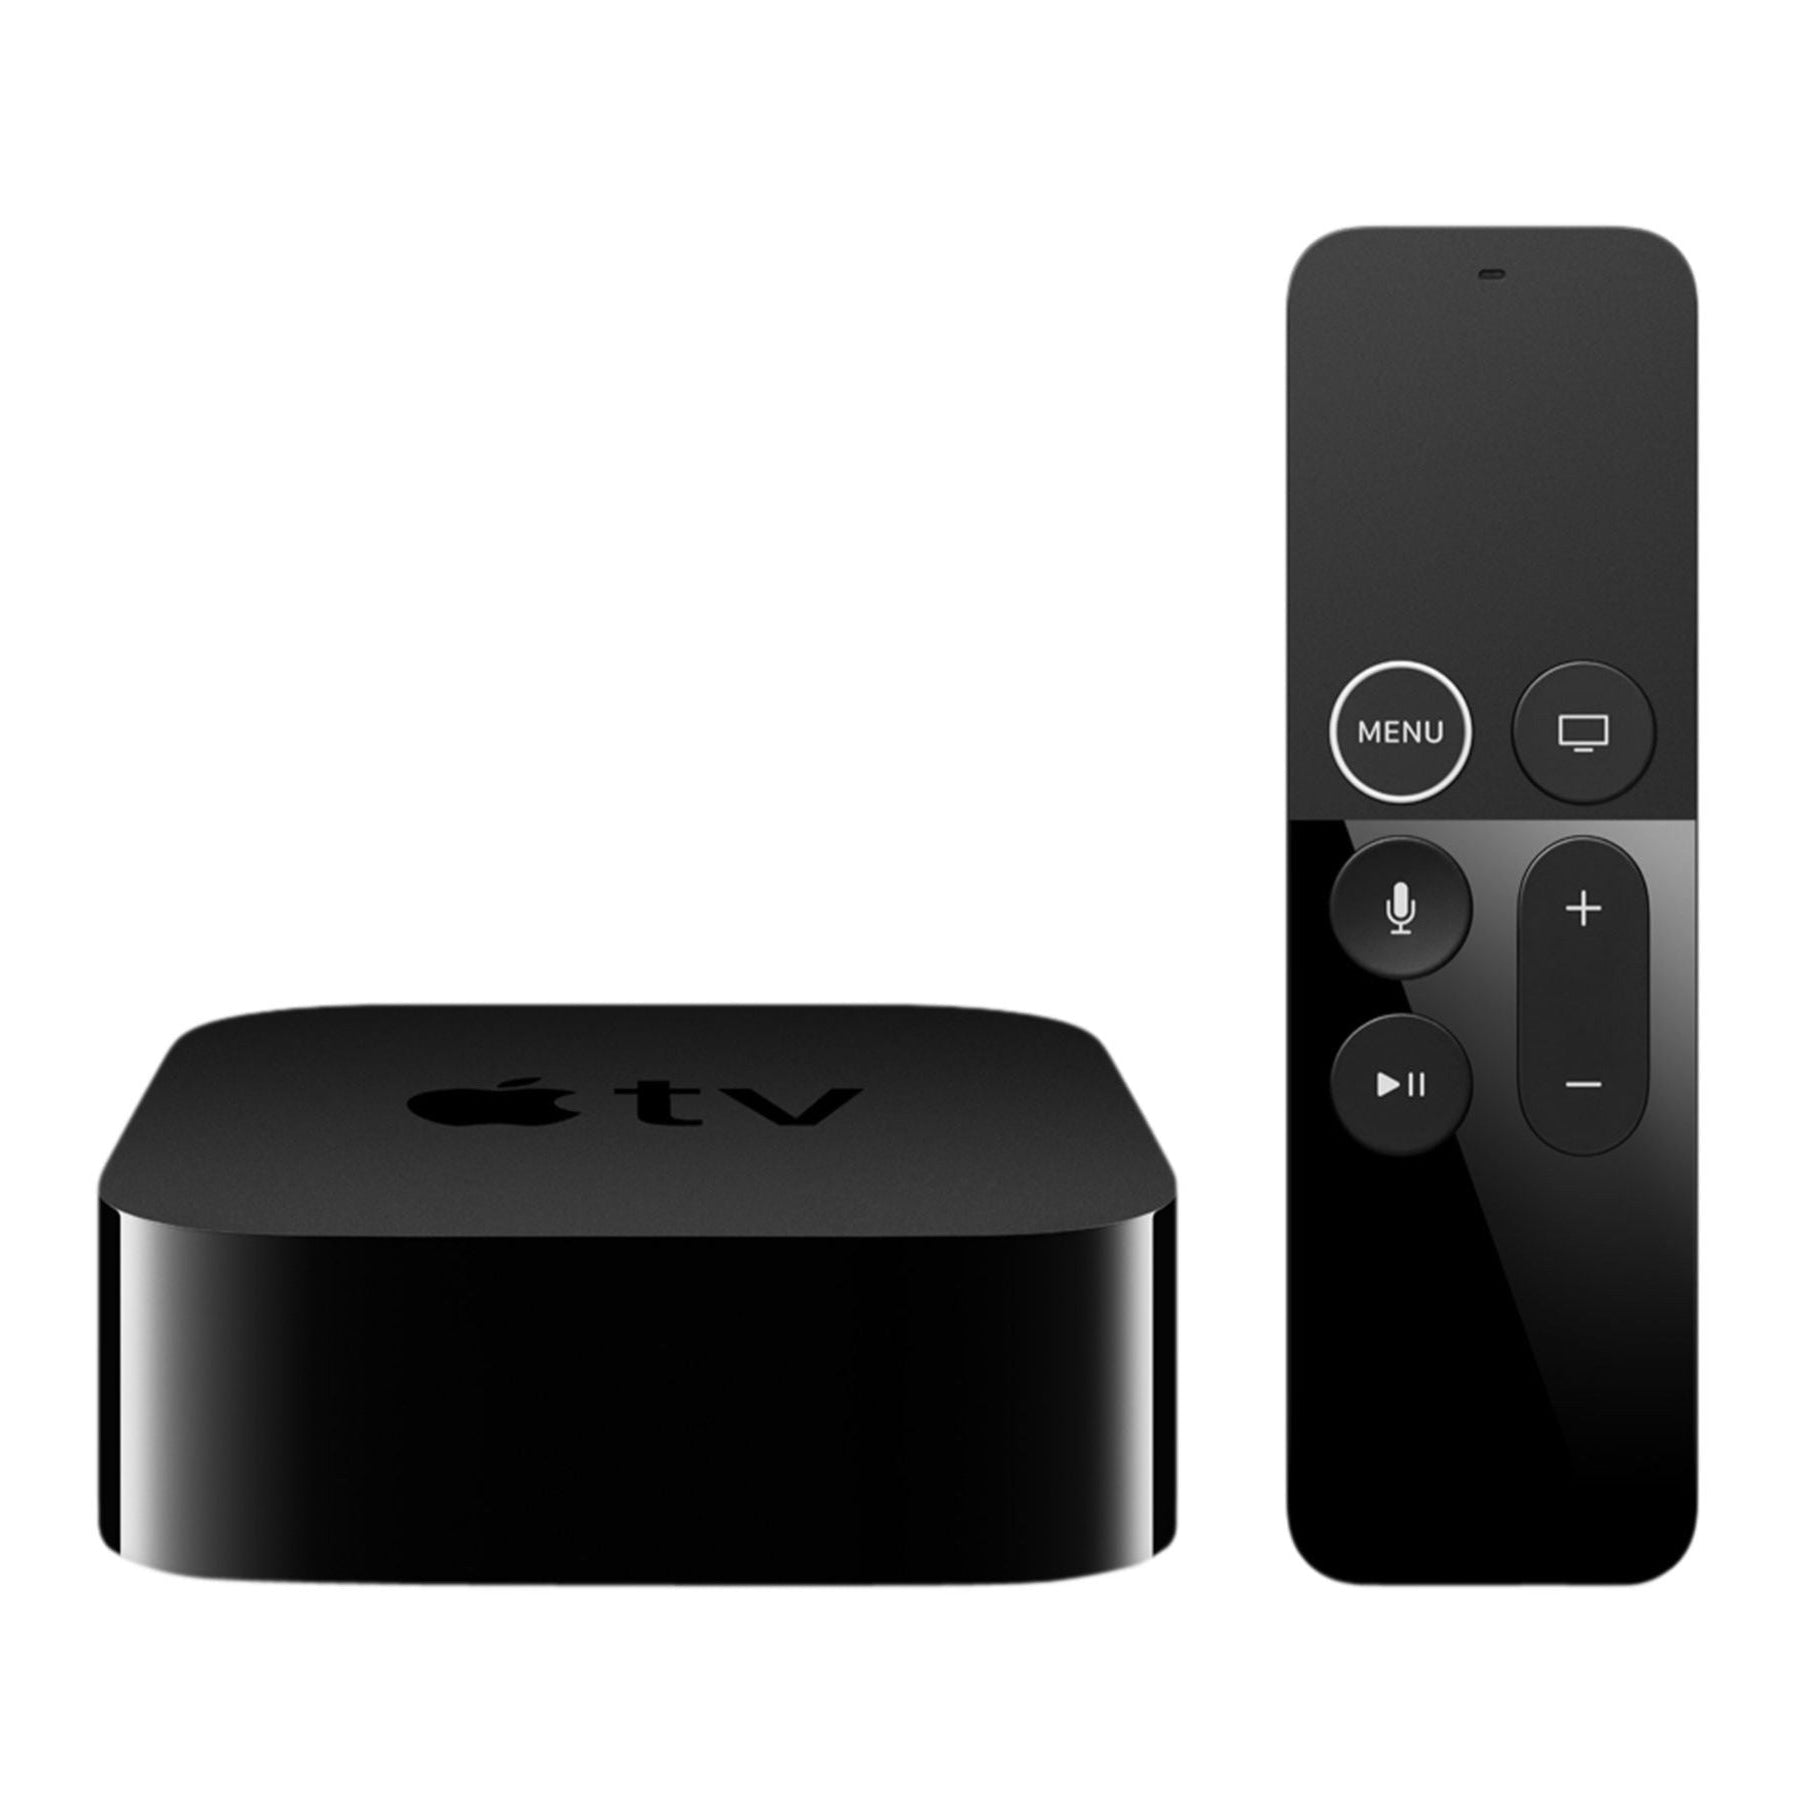 Apple TV HD 32GB A1625 (MR912B/A) 4th Generation - Black - Good